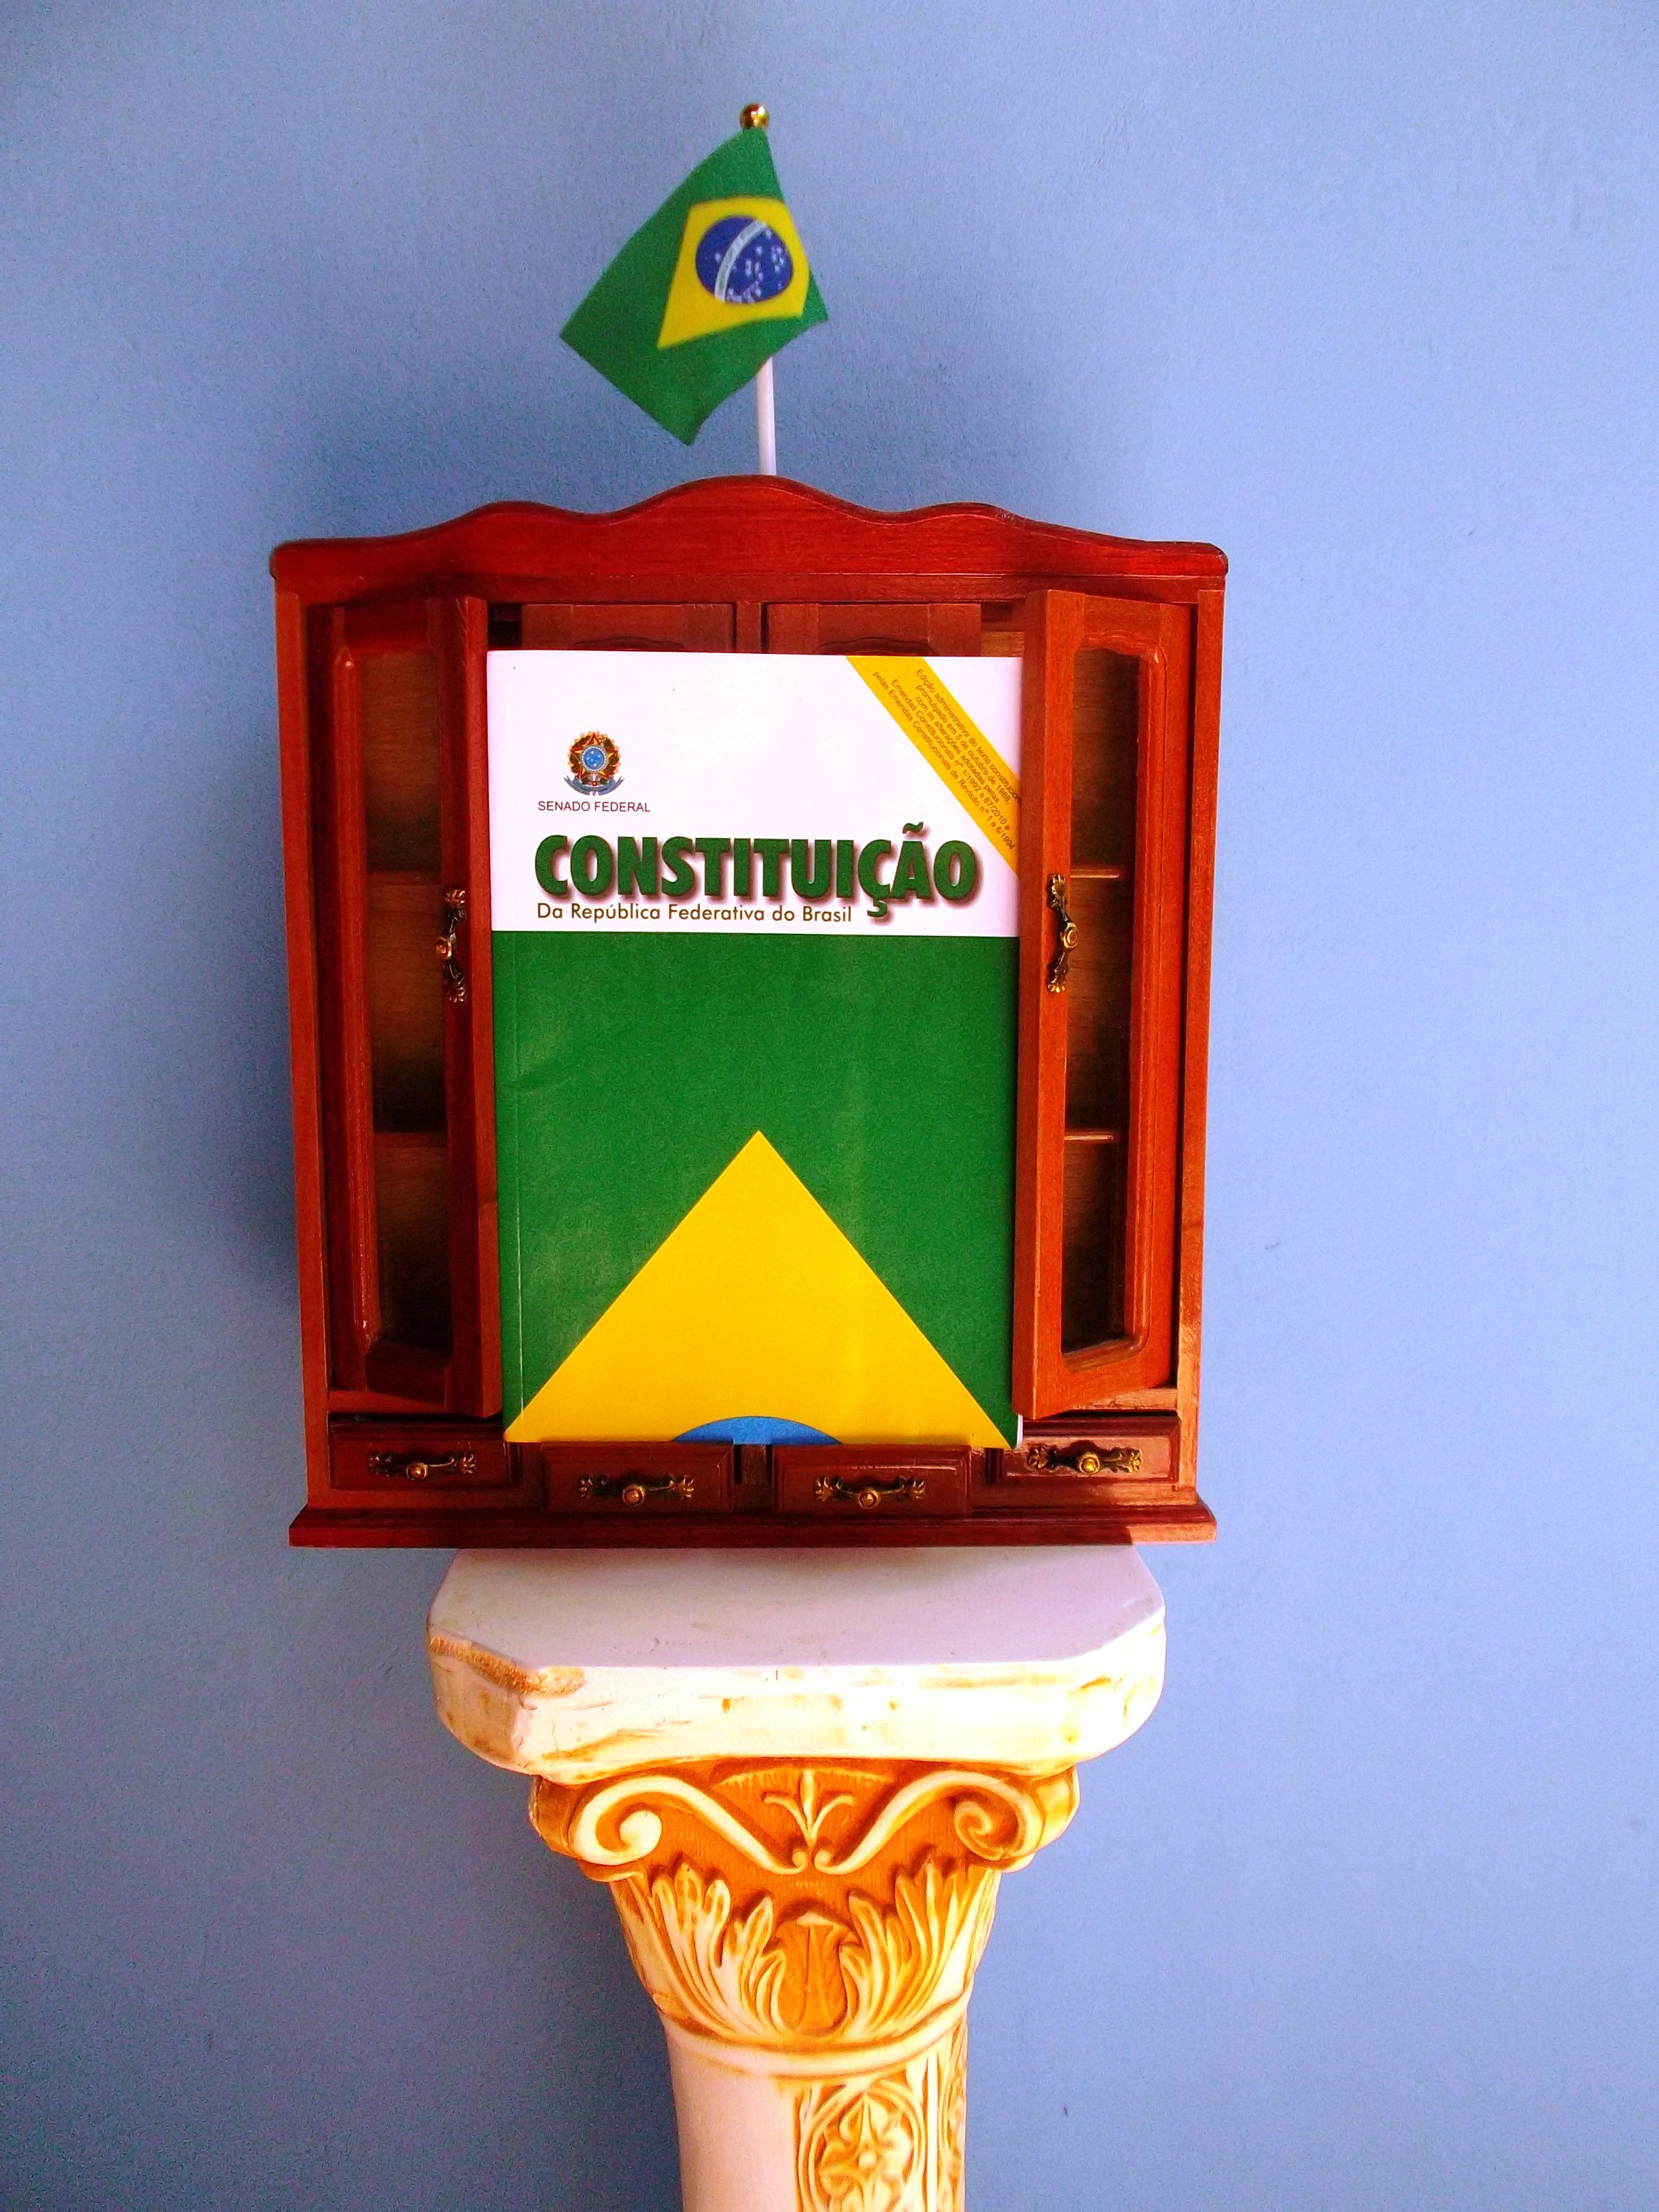 Constitución de Brasil - Wikipedia, la enciclopedia libre